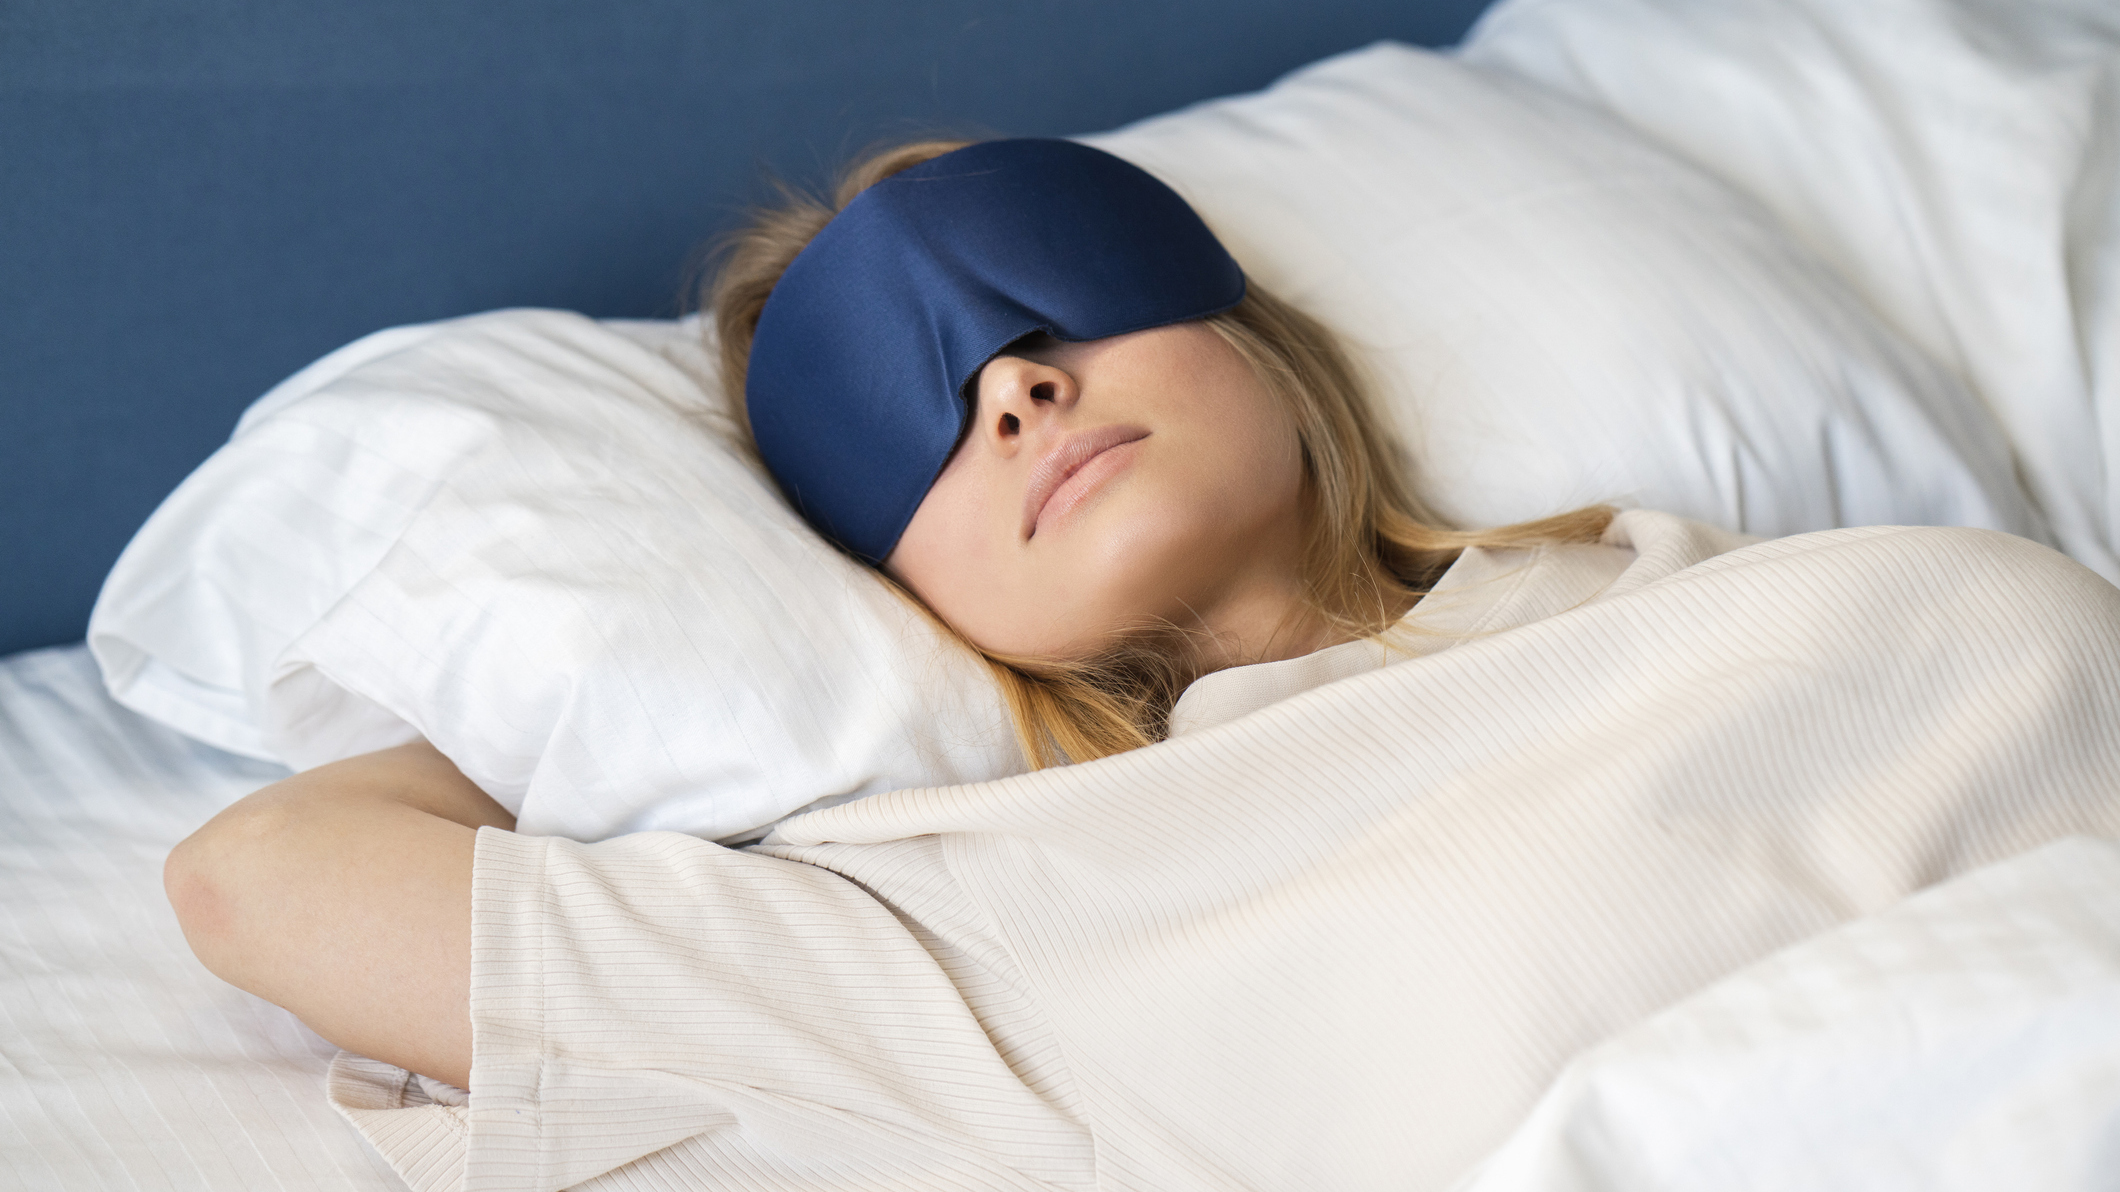 Uma mulher com cabelo loiro usando uma máscara de olhos azuis dorme em um sofá-cama